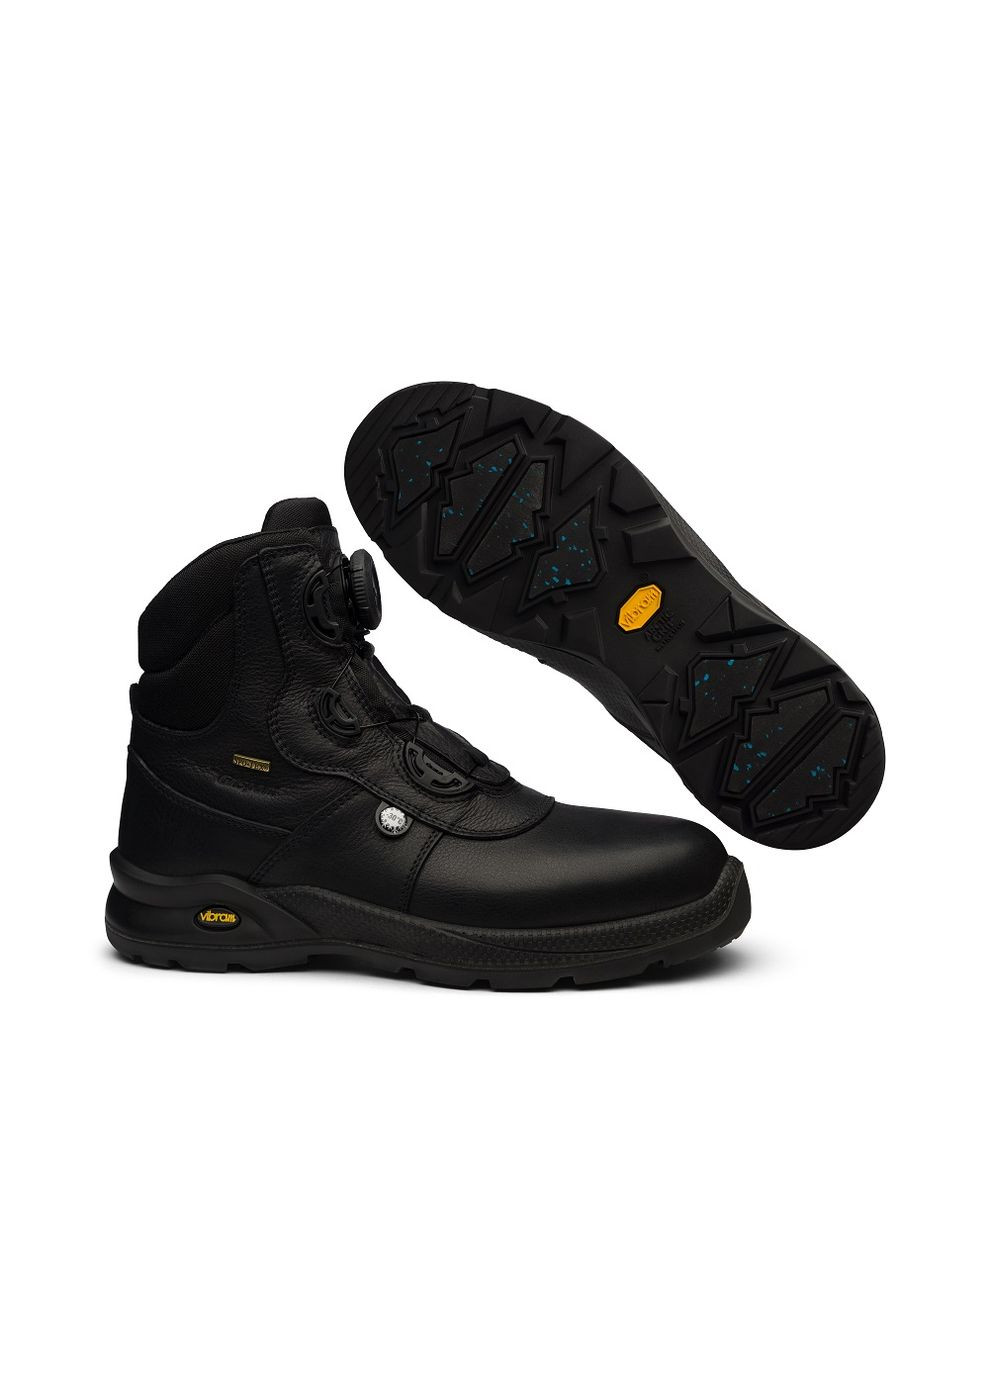 Черные осенние ботинки (р) кожа 0-2-2-710503wtn Grisport